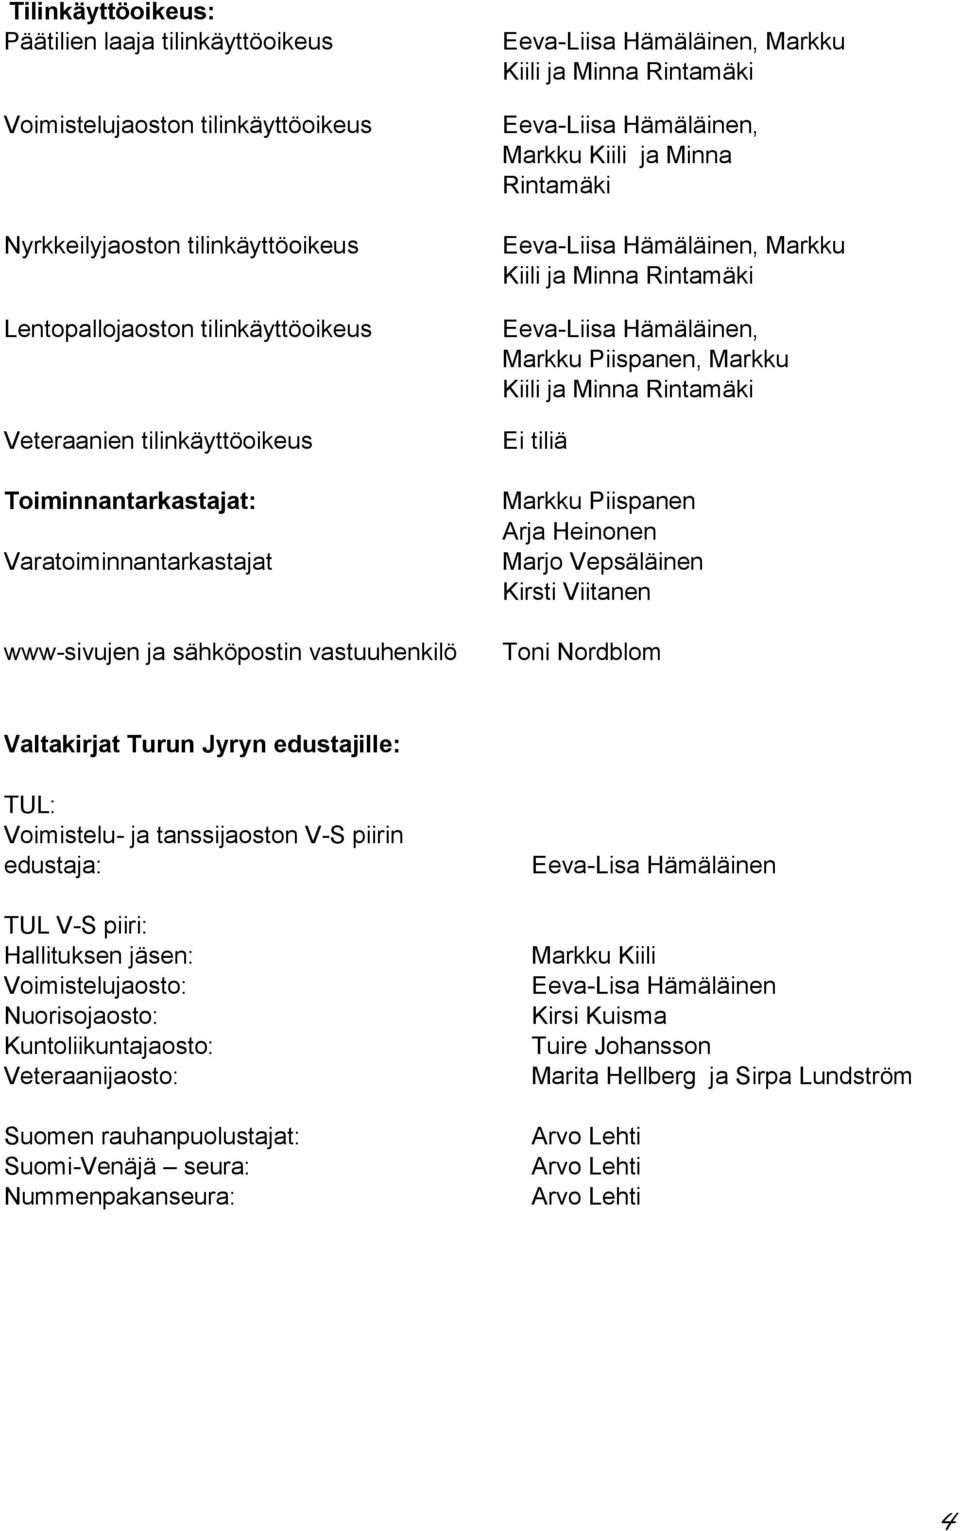 Eeva-Liisa Hämäläinen, Markku Kiili ja Minna Rintamäki Eeva-Liisa Hämäläinen, Markku Piispanen, Markku Kiili ja Minna Rintamäki Ei tiliä Markku Piispanen Arja Heinonen Marjo Vepsäläinen Kirsti